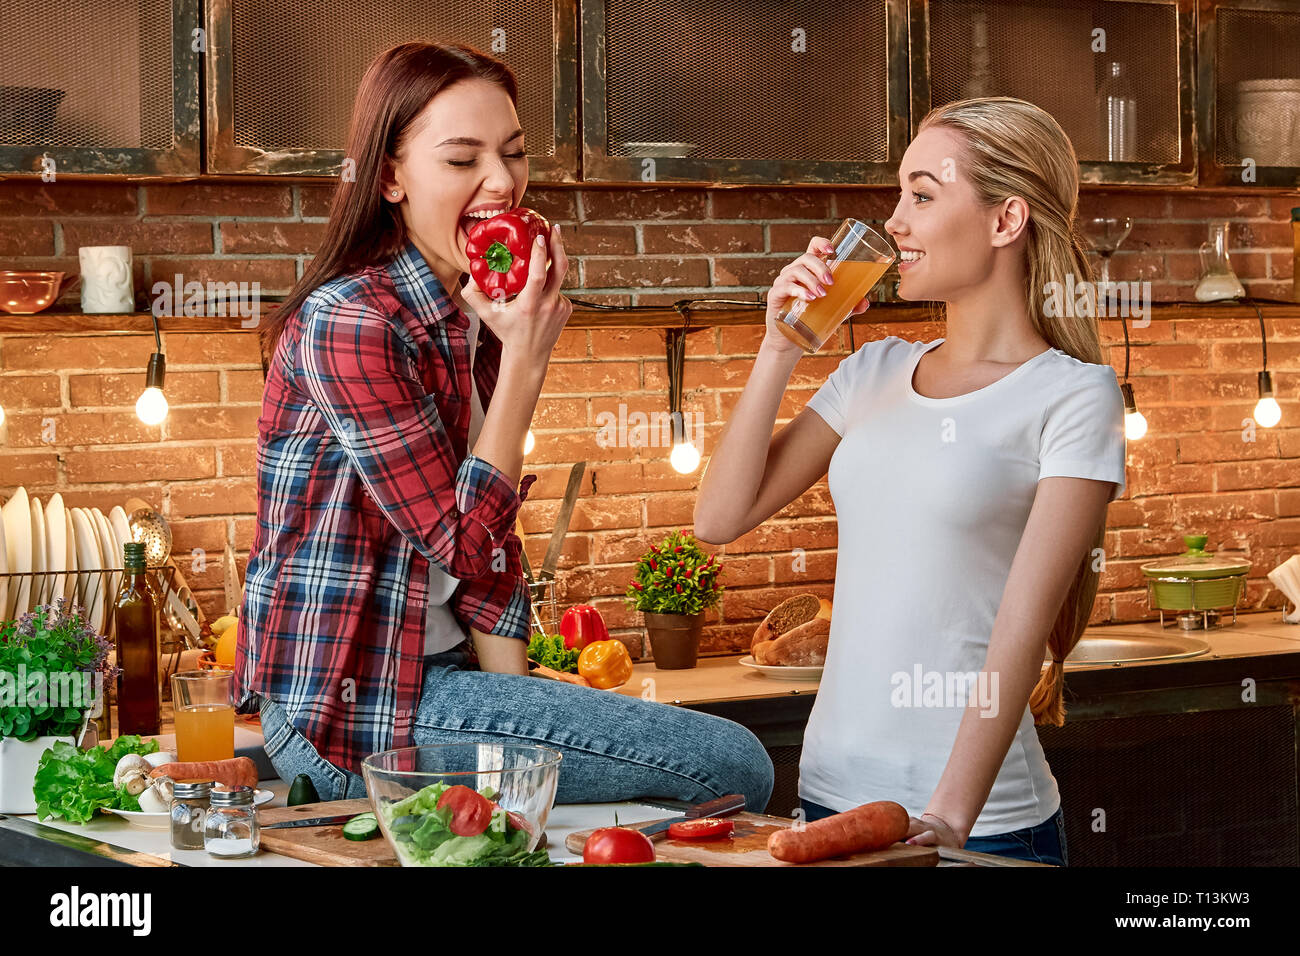 Porträt von zwei attraktive Frauen, Spaß zu haben, während der Vorbereitung Salat. Sie sind voll in den Prozess einbezogen. Dunkelhaarige in kariertem Hemd sitzen auf die Tischplatte, sie wird ein Pfeffer zu beißen. Ihre blonden Freund im weißen T-Shirt Getränke frischer Saft und betrachtet ihre Stockfoto